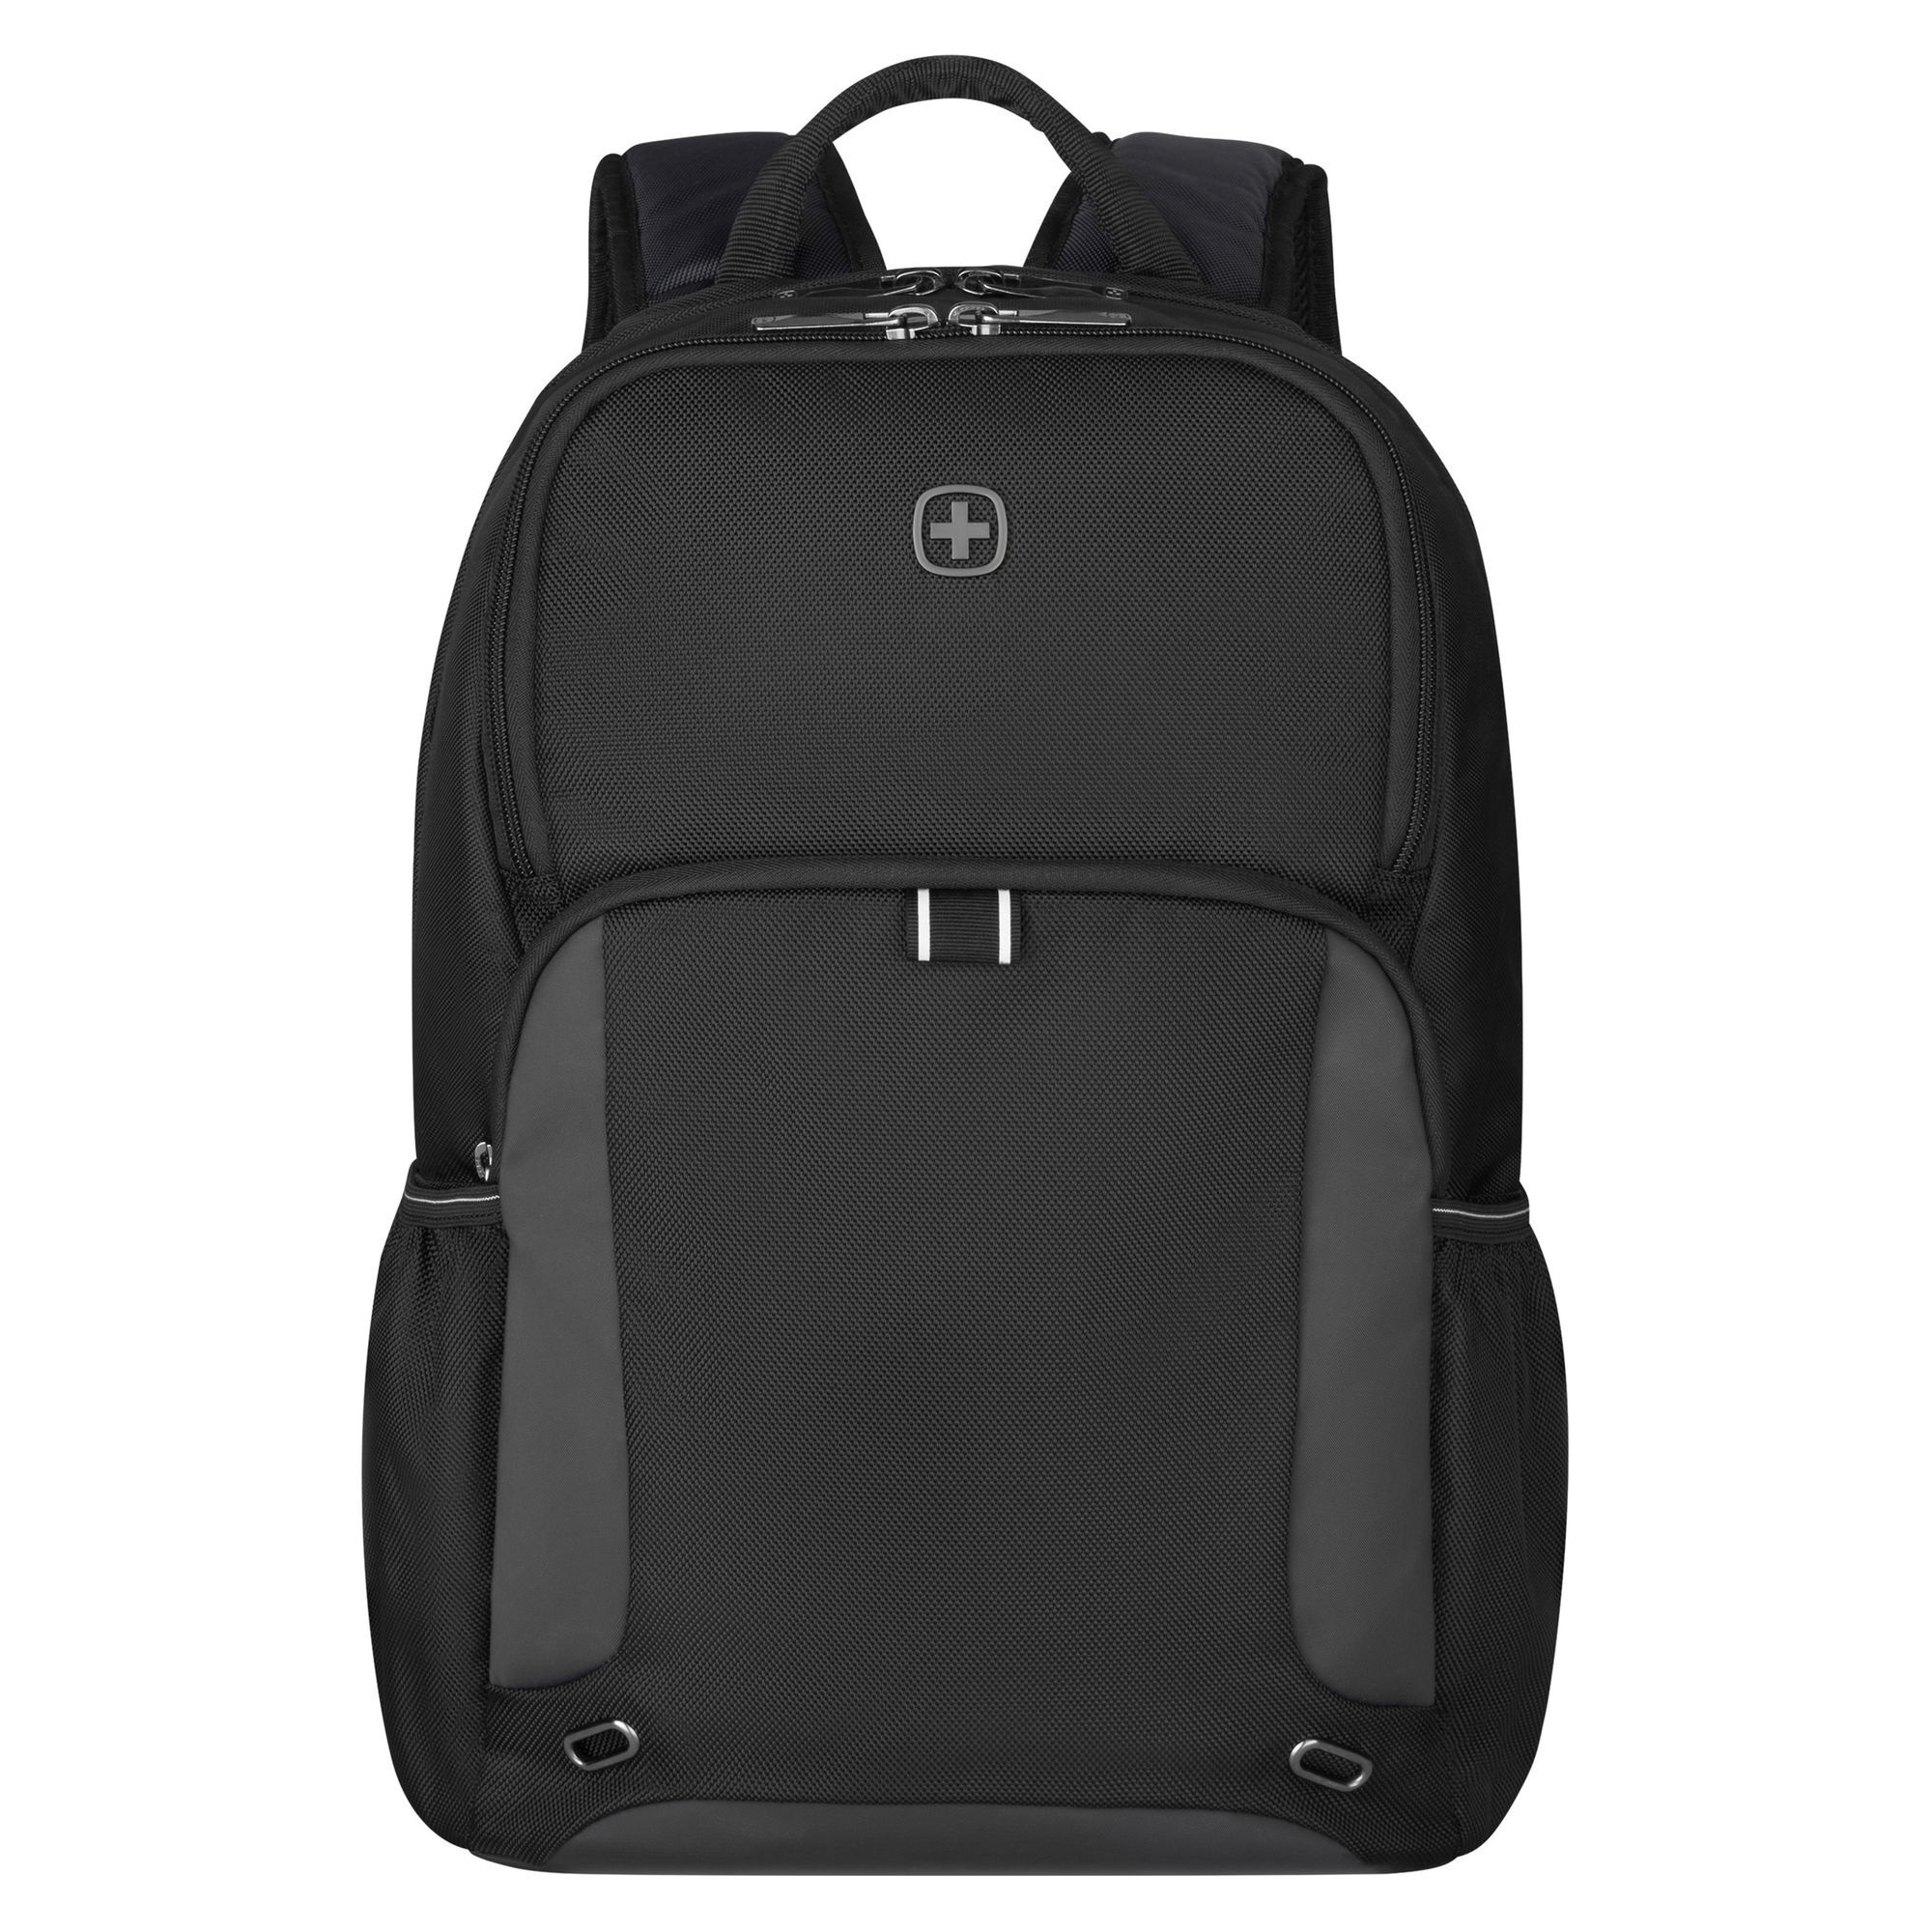 Рюкзак Wenger XE Tryal 44 cm Laptopfach, черный рюкзак wenger trayl 45 cm laptopfach цвет gravity black